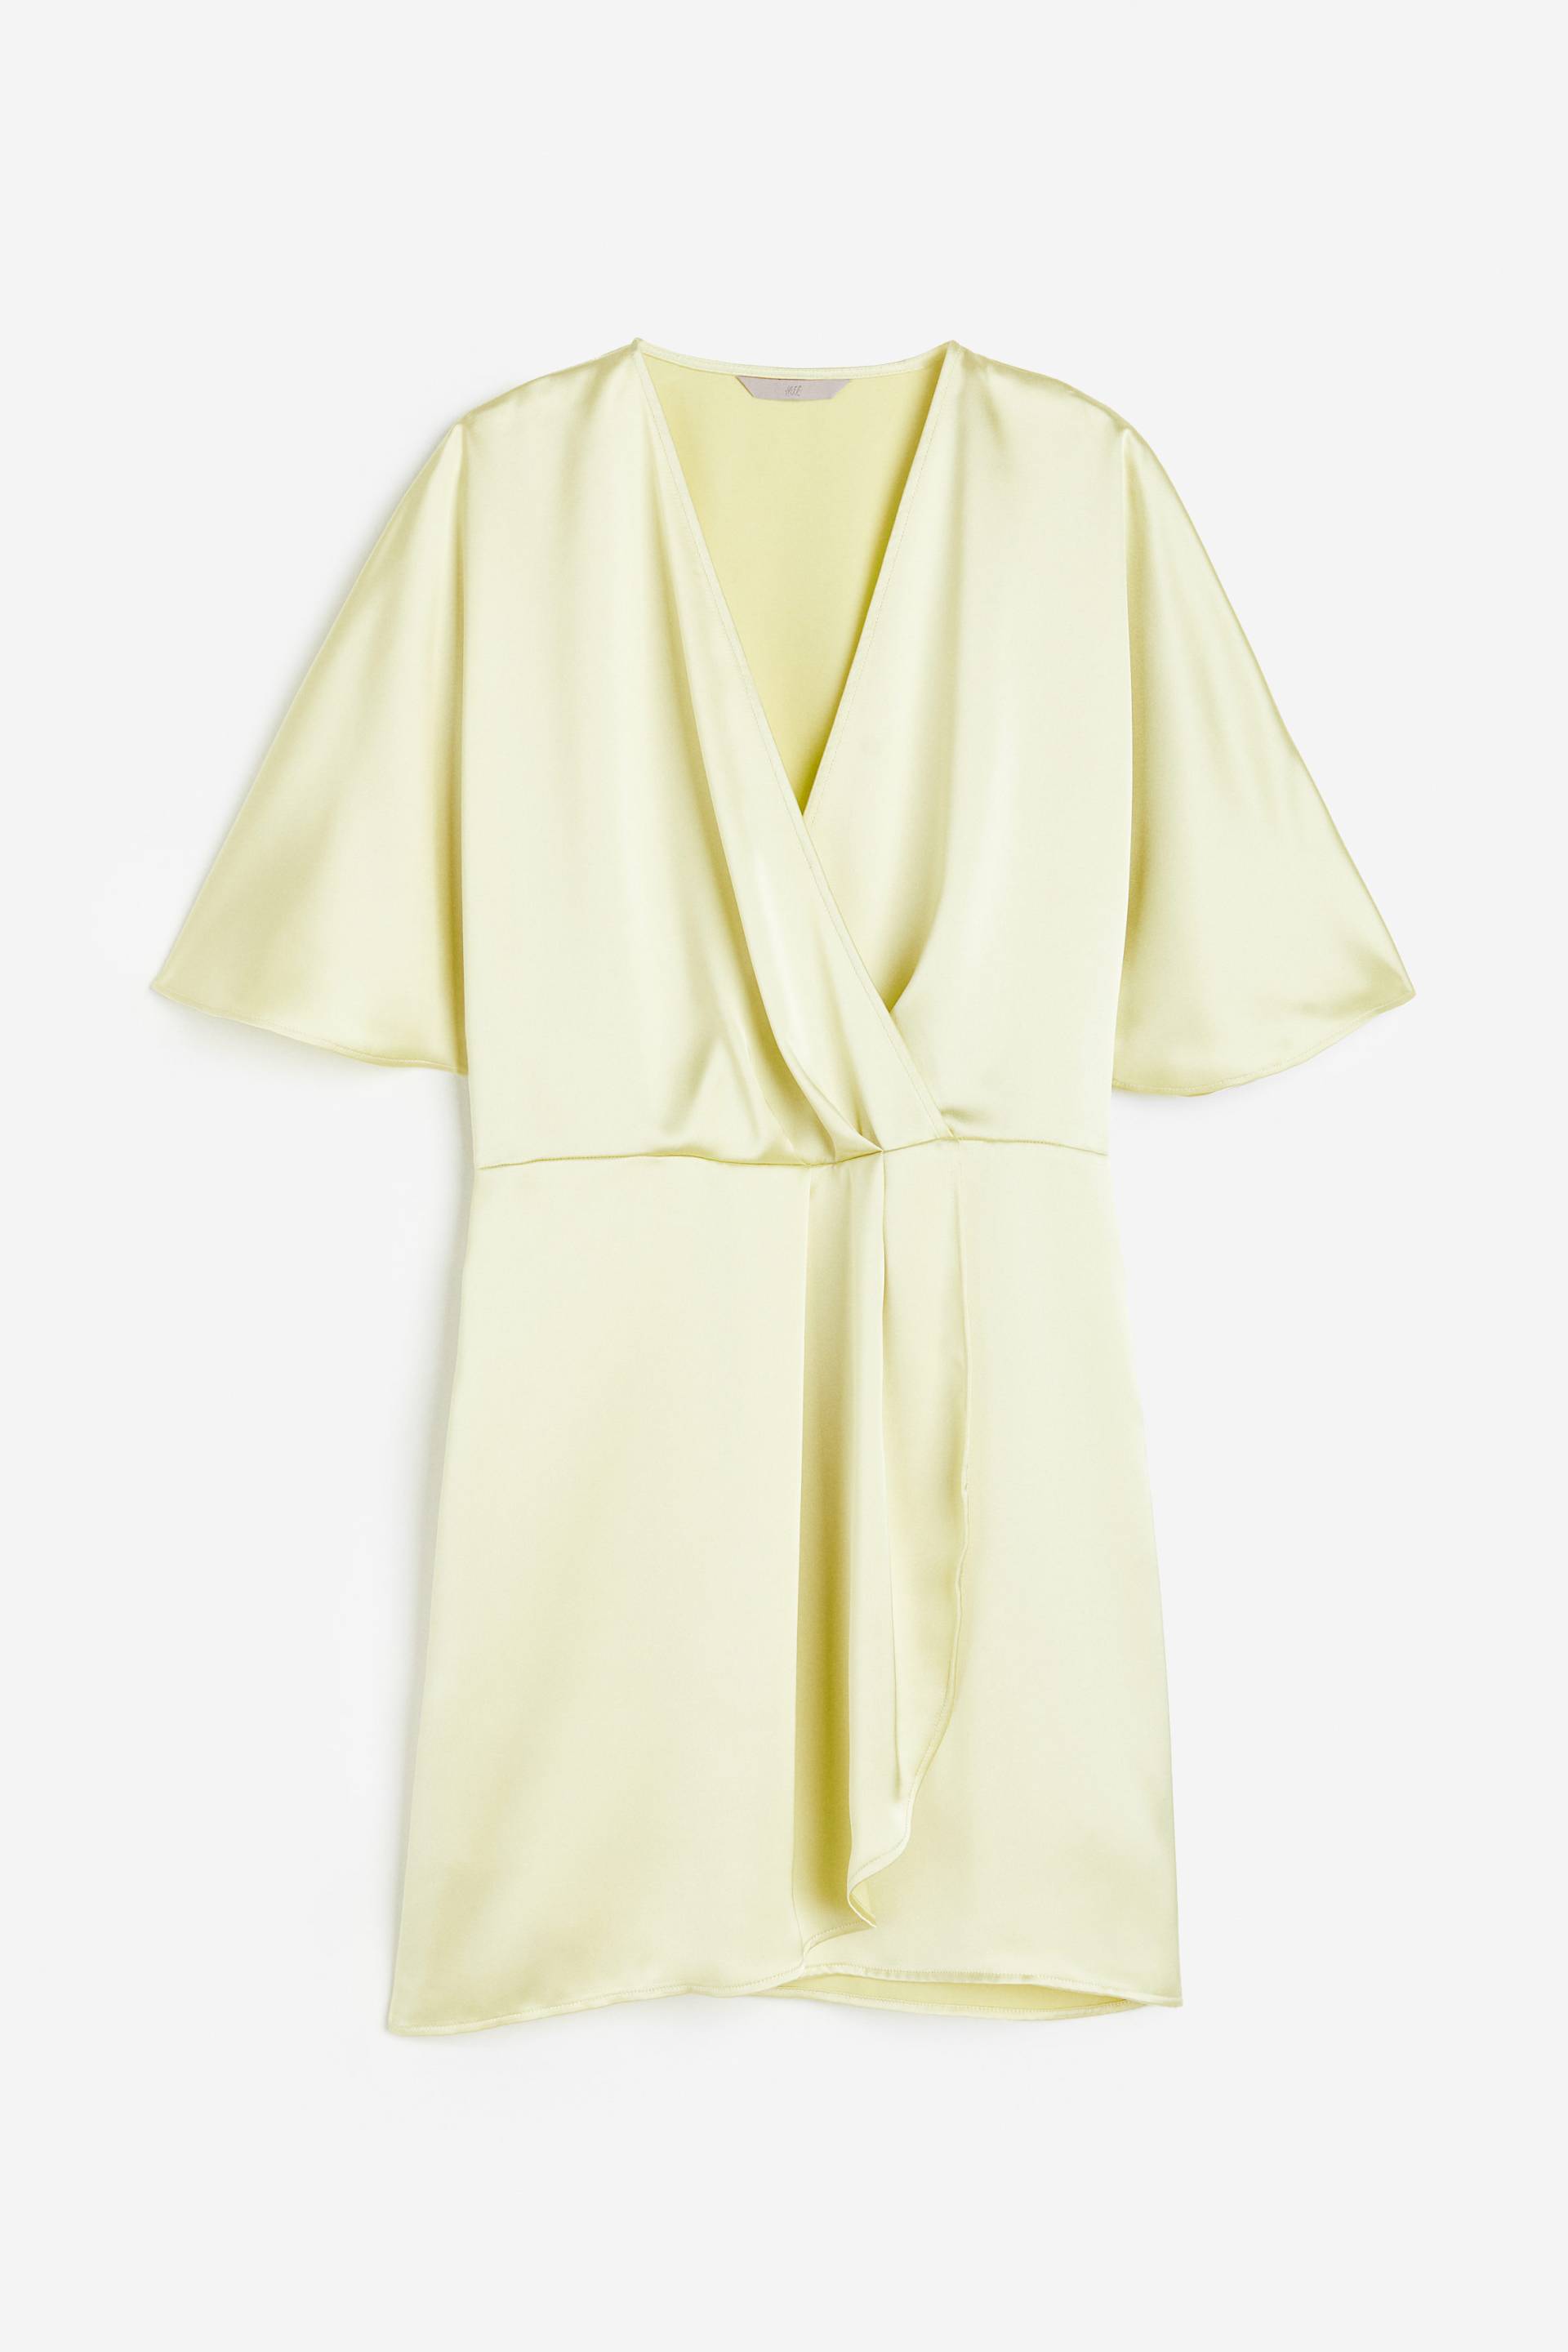 H&M Wickelkleid aus Satin Hellgelb, Alltagskleider in Größe XXL. Farbe: Light yellow von H&M